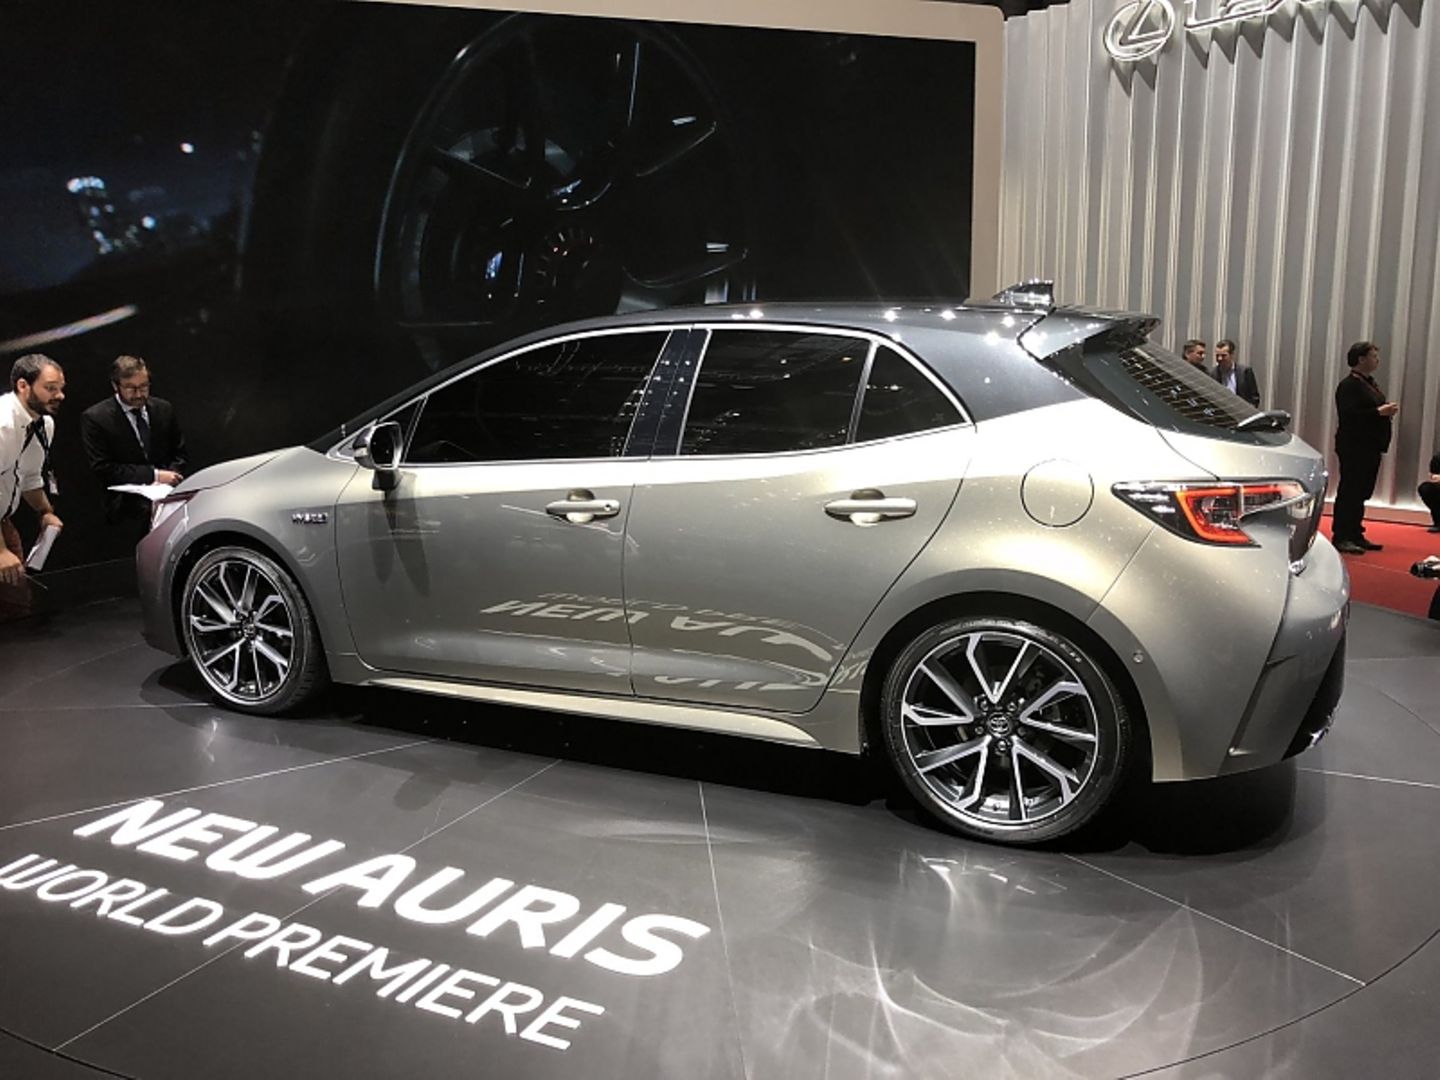 Toyota Auris 2018 - es sind ein Turbobenziner und zwei Hybriden im Angebot